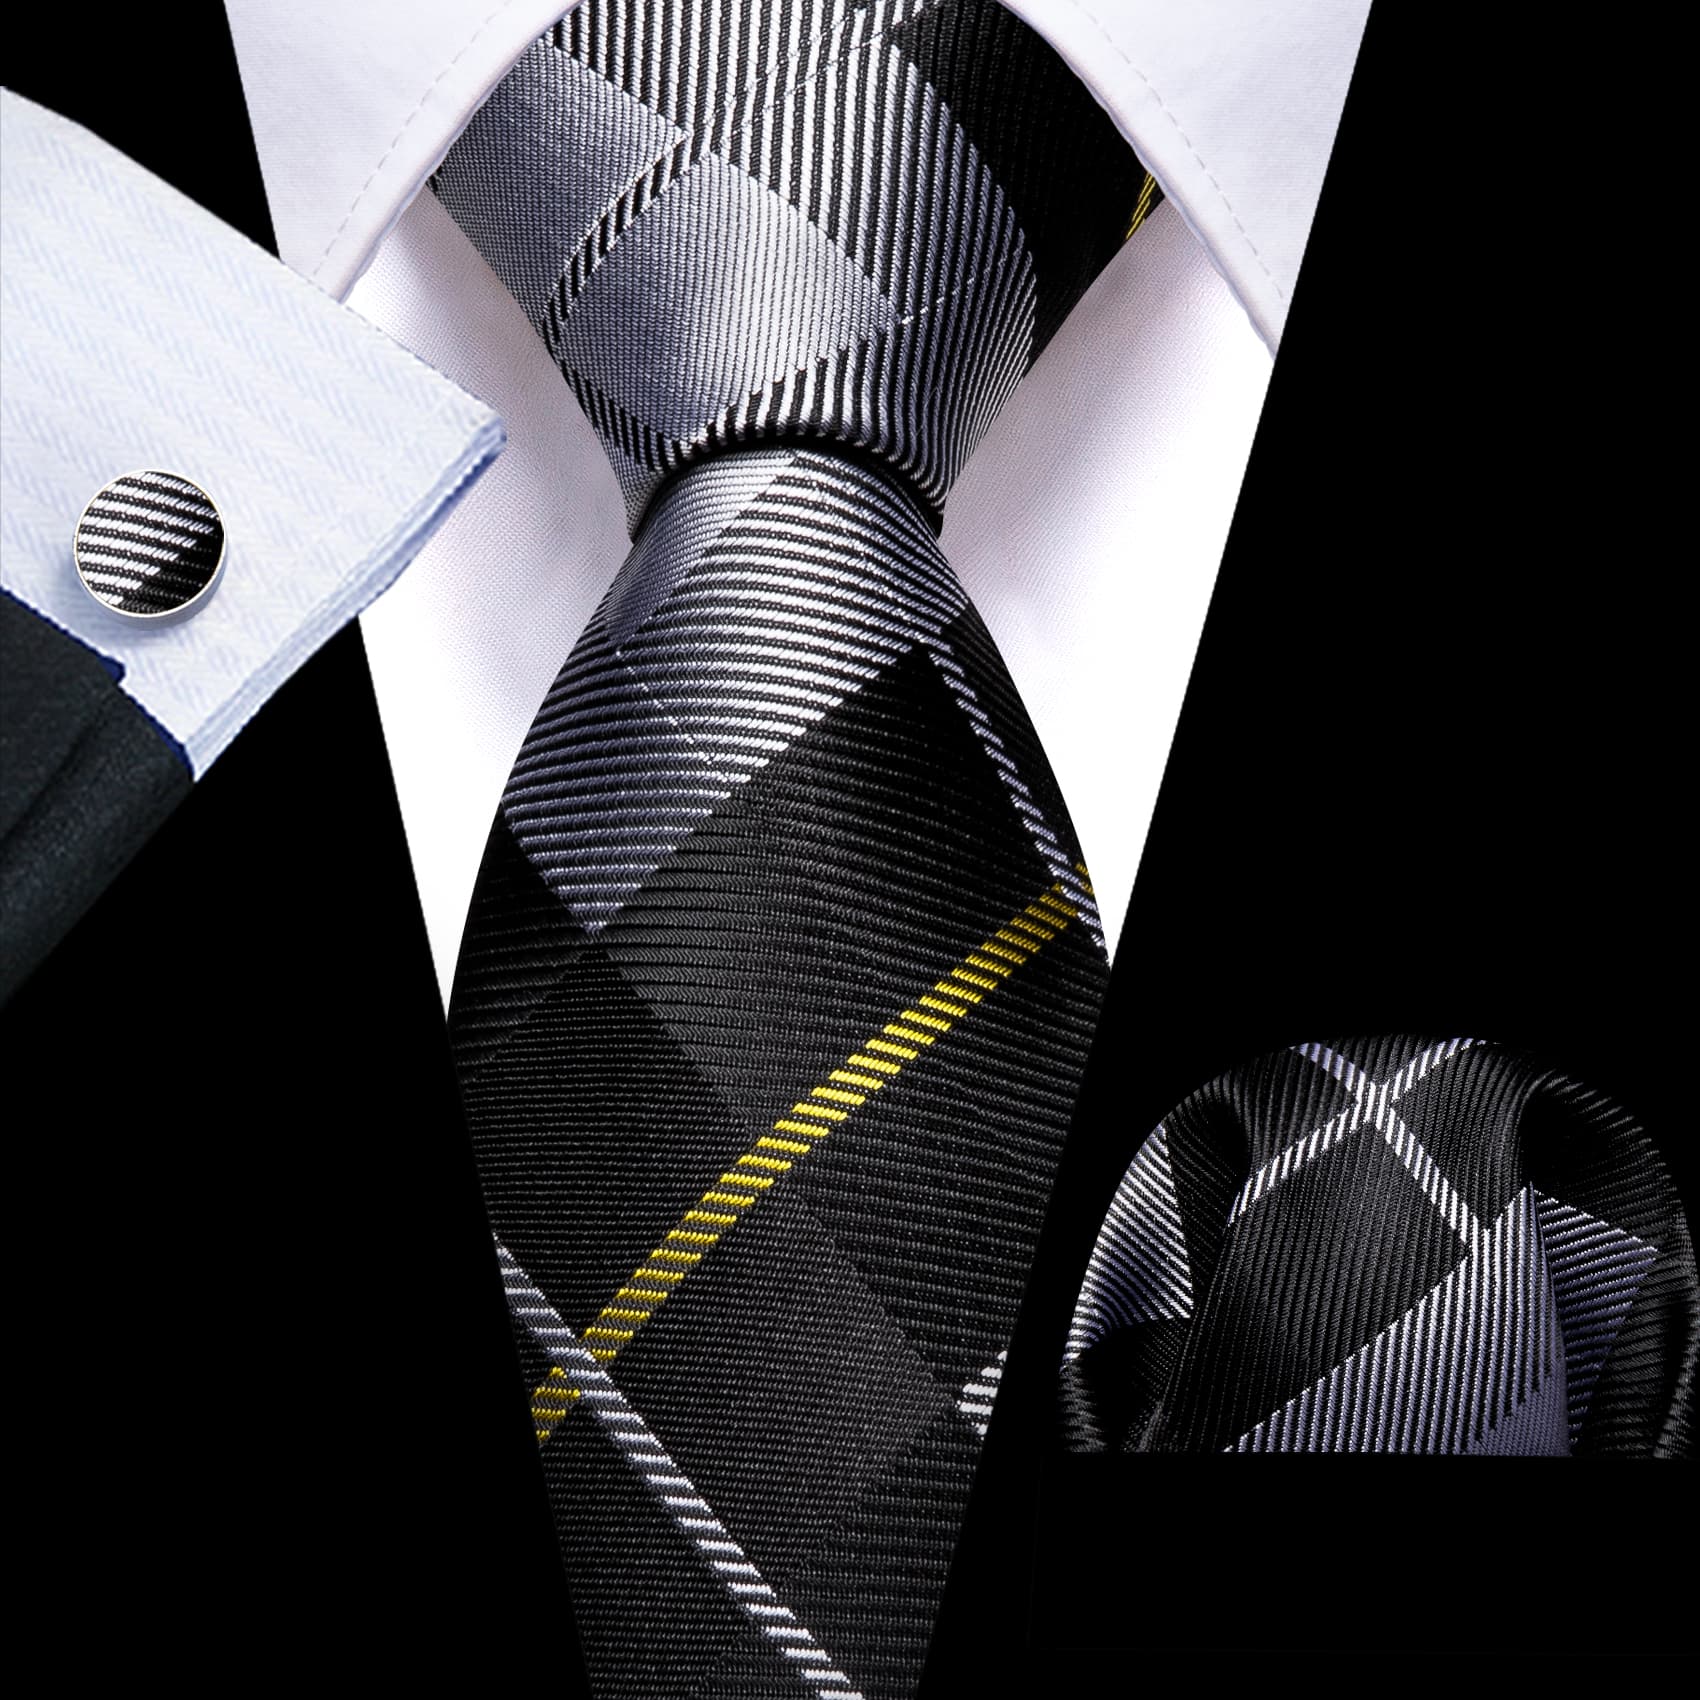 Plaid Tie Black Grey Checkered Necktie and Cufflink Set